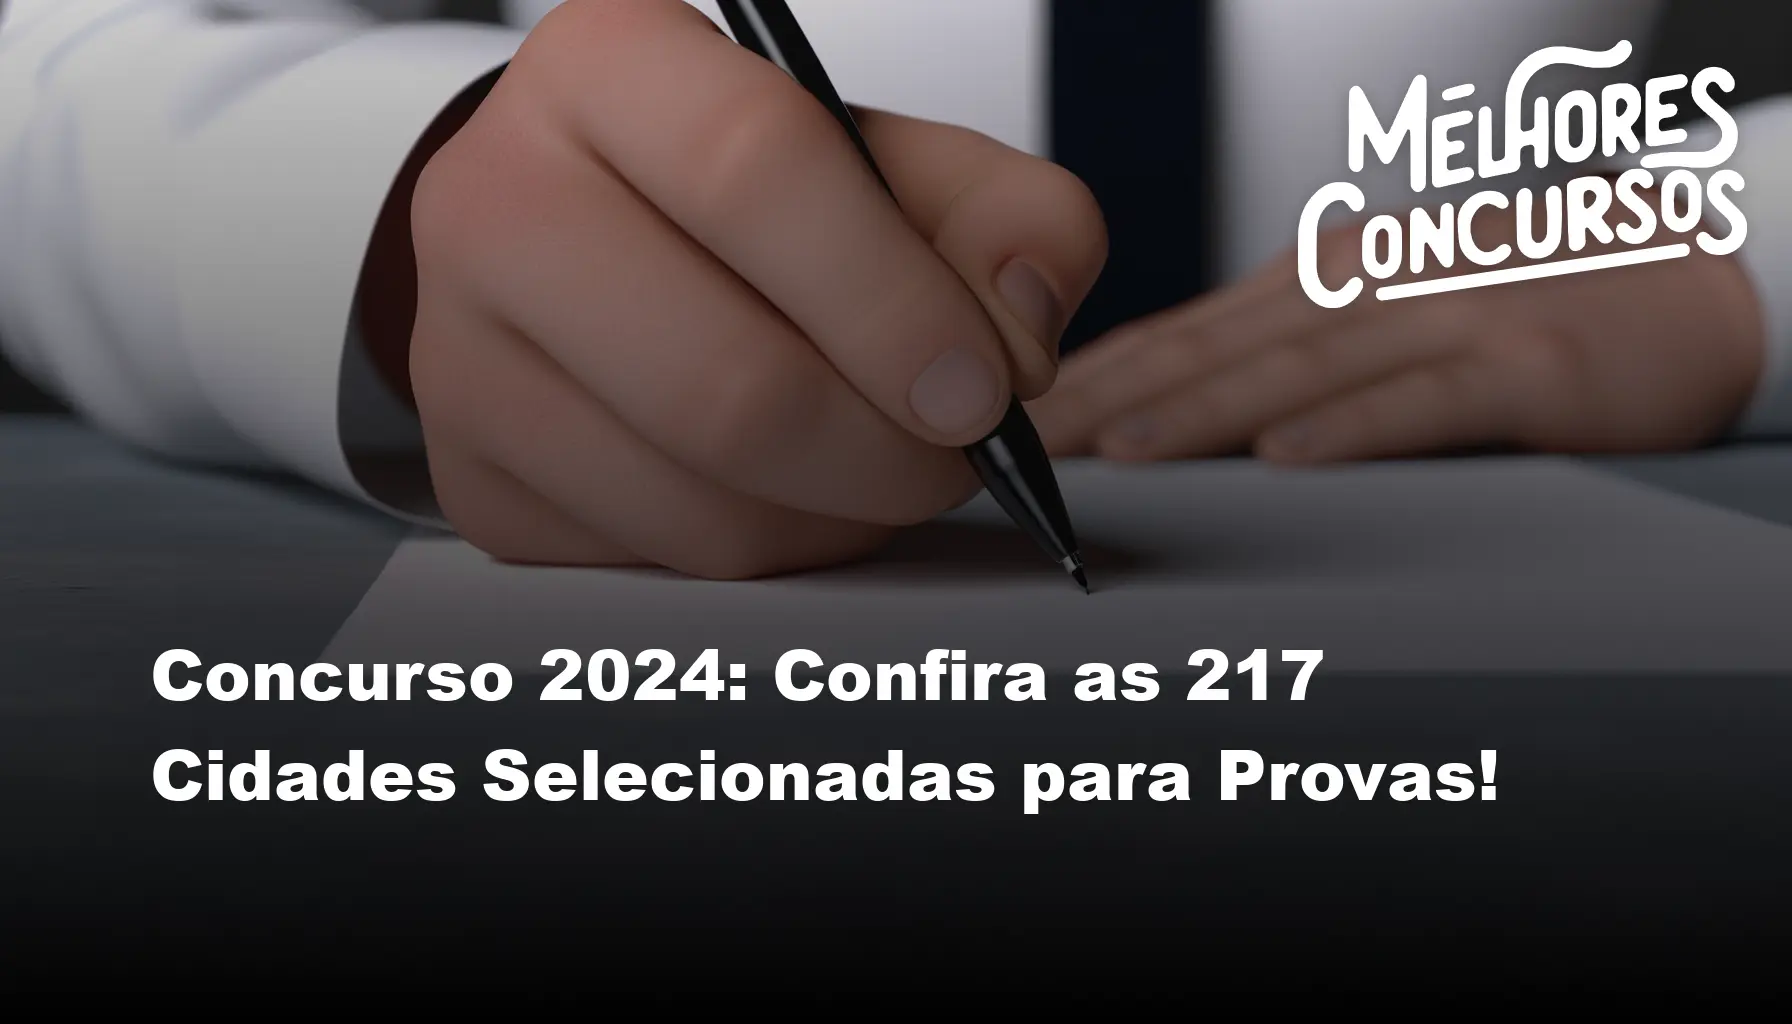 Concurso 2024 Confira as 217 Cidades Selecionadas para Provas!